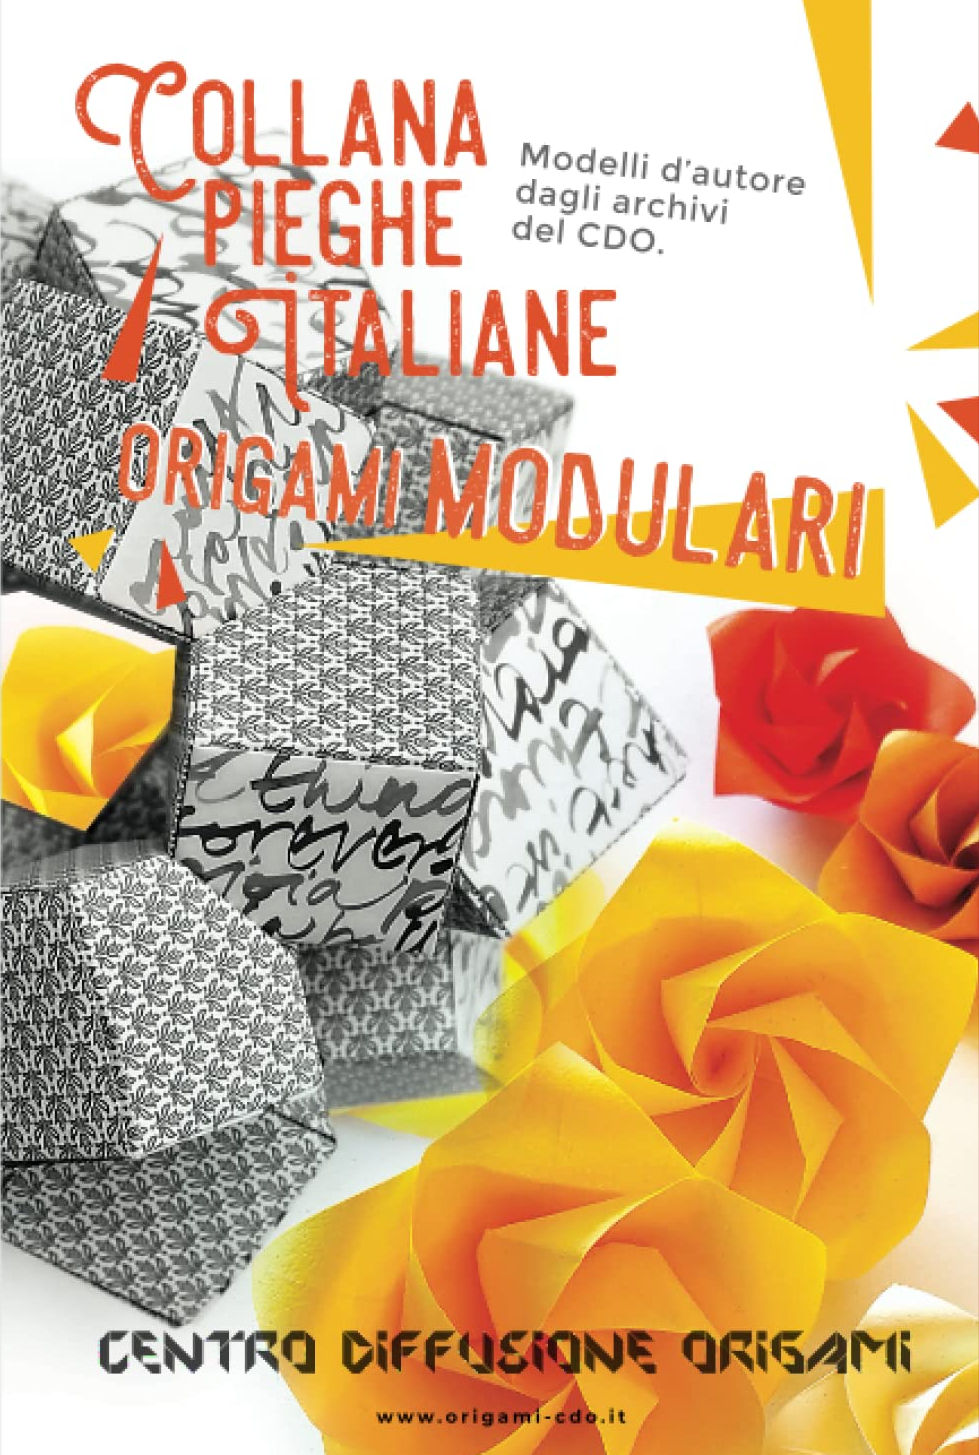 Collana pieghe Italiane - origami MODULARI : page 47.